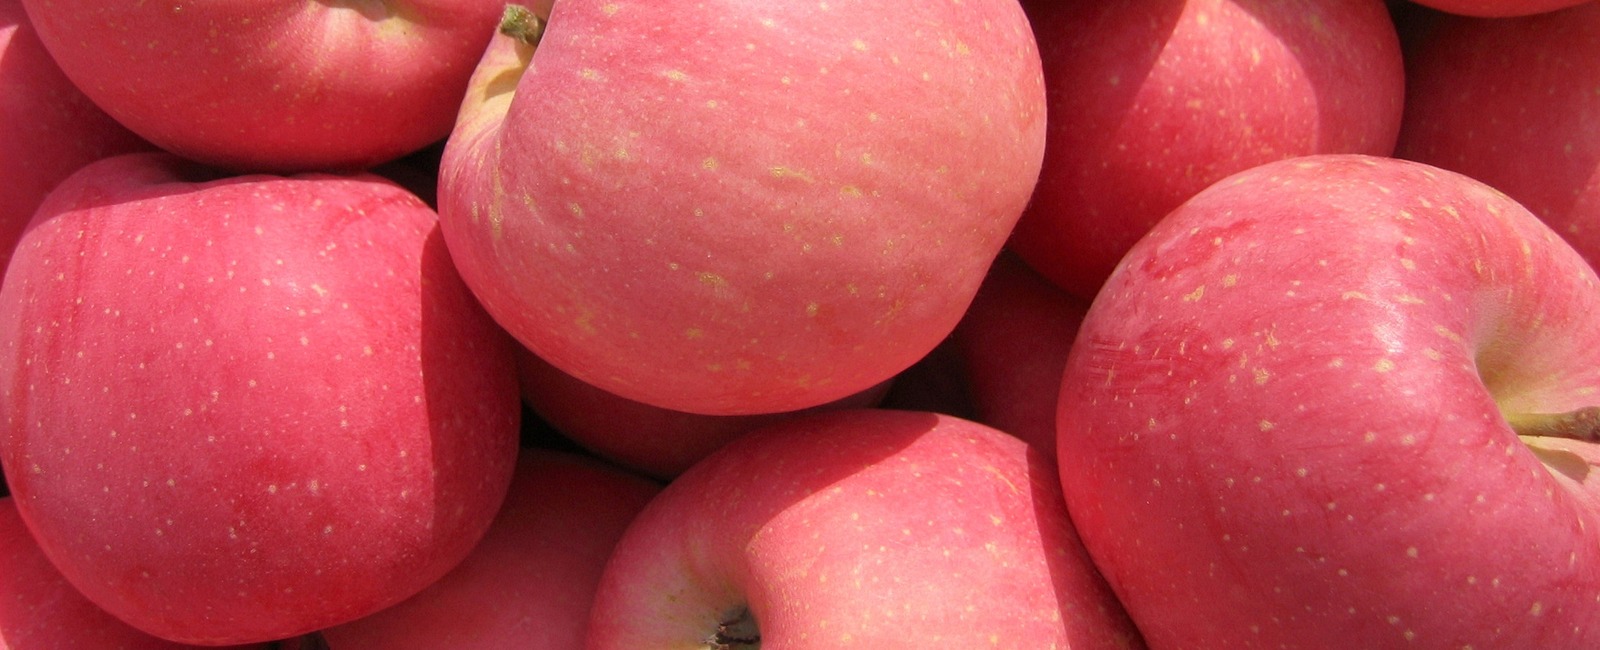 Besoins nutritionnels des pommes et des poires